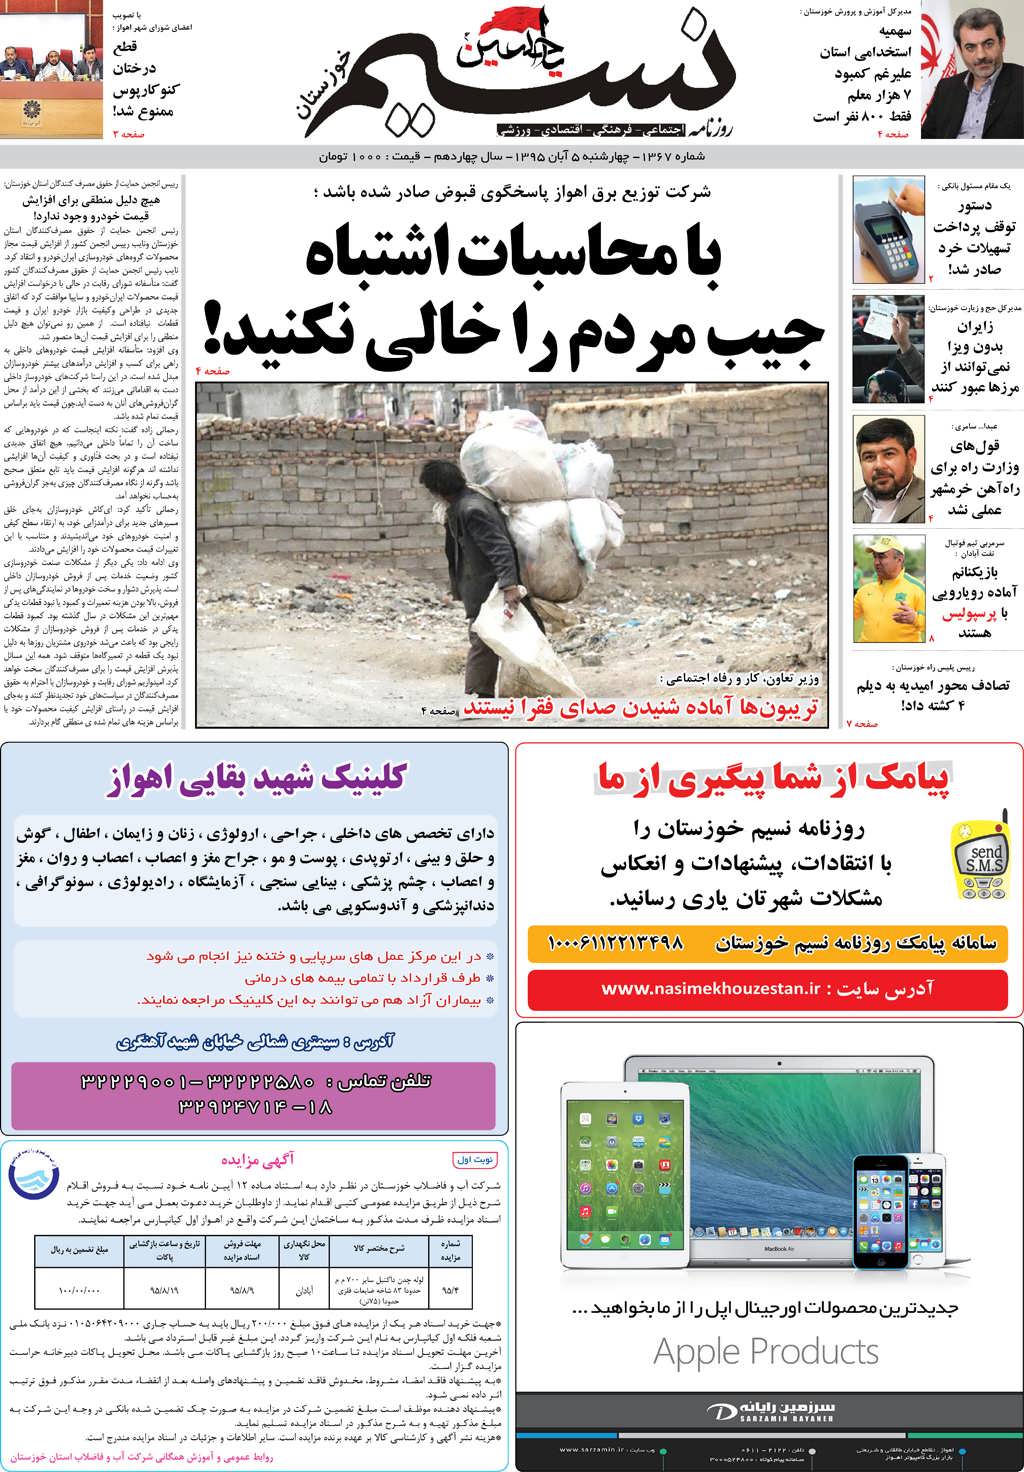 صفحه اصلی روزنامه نسیم شماره 1367